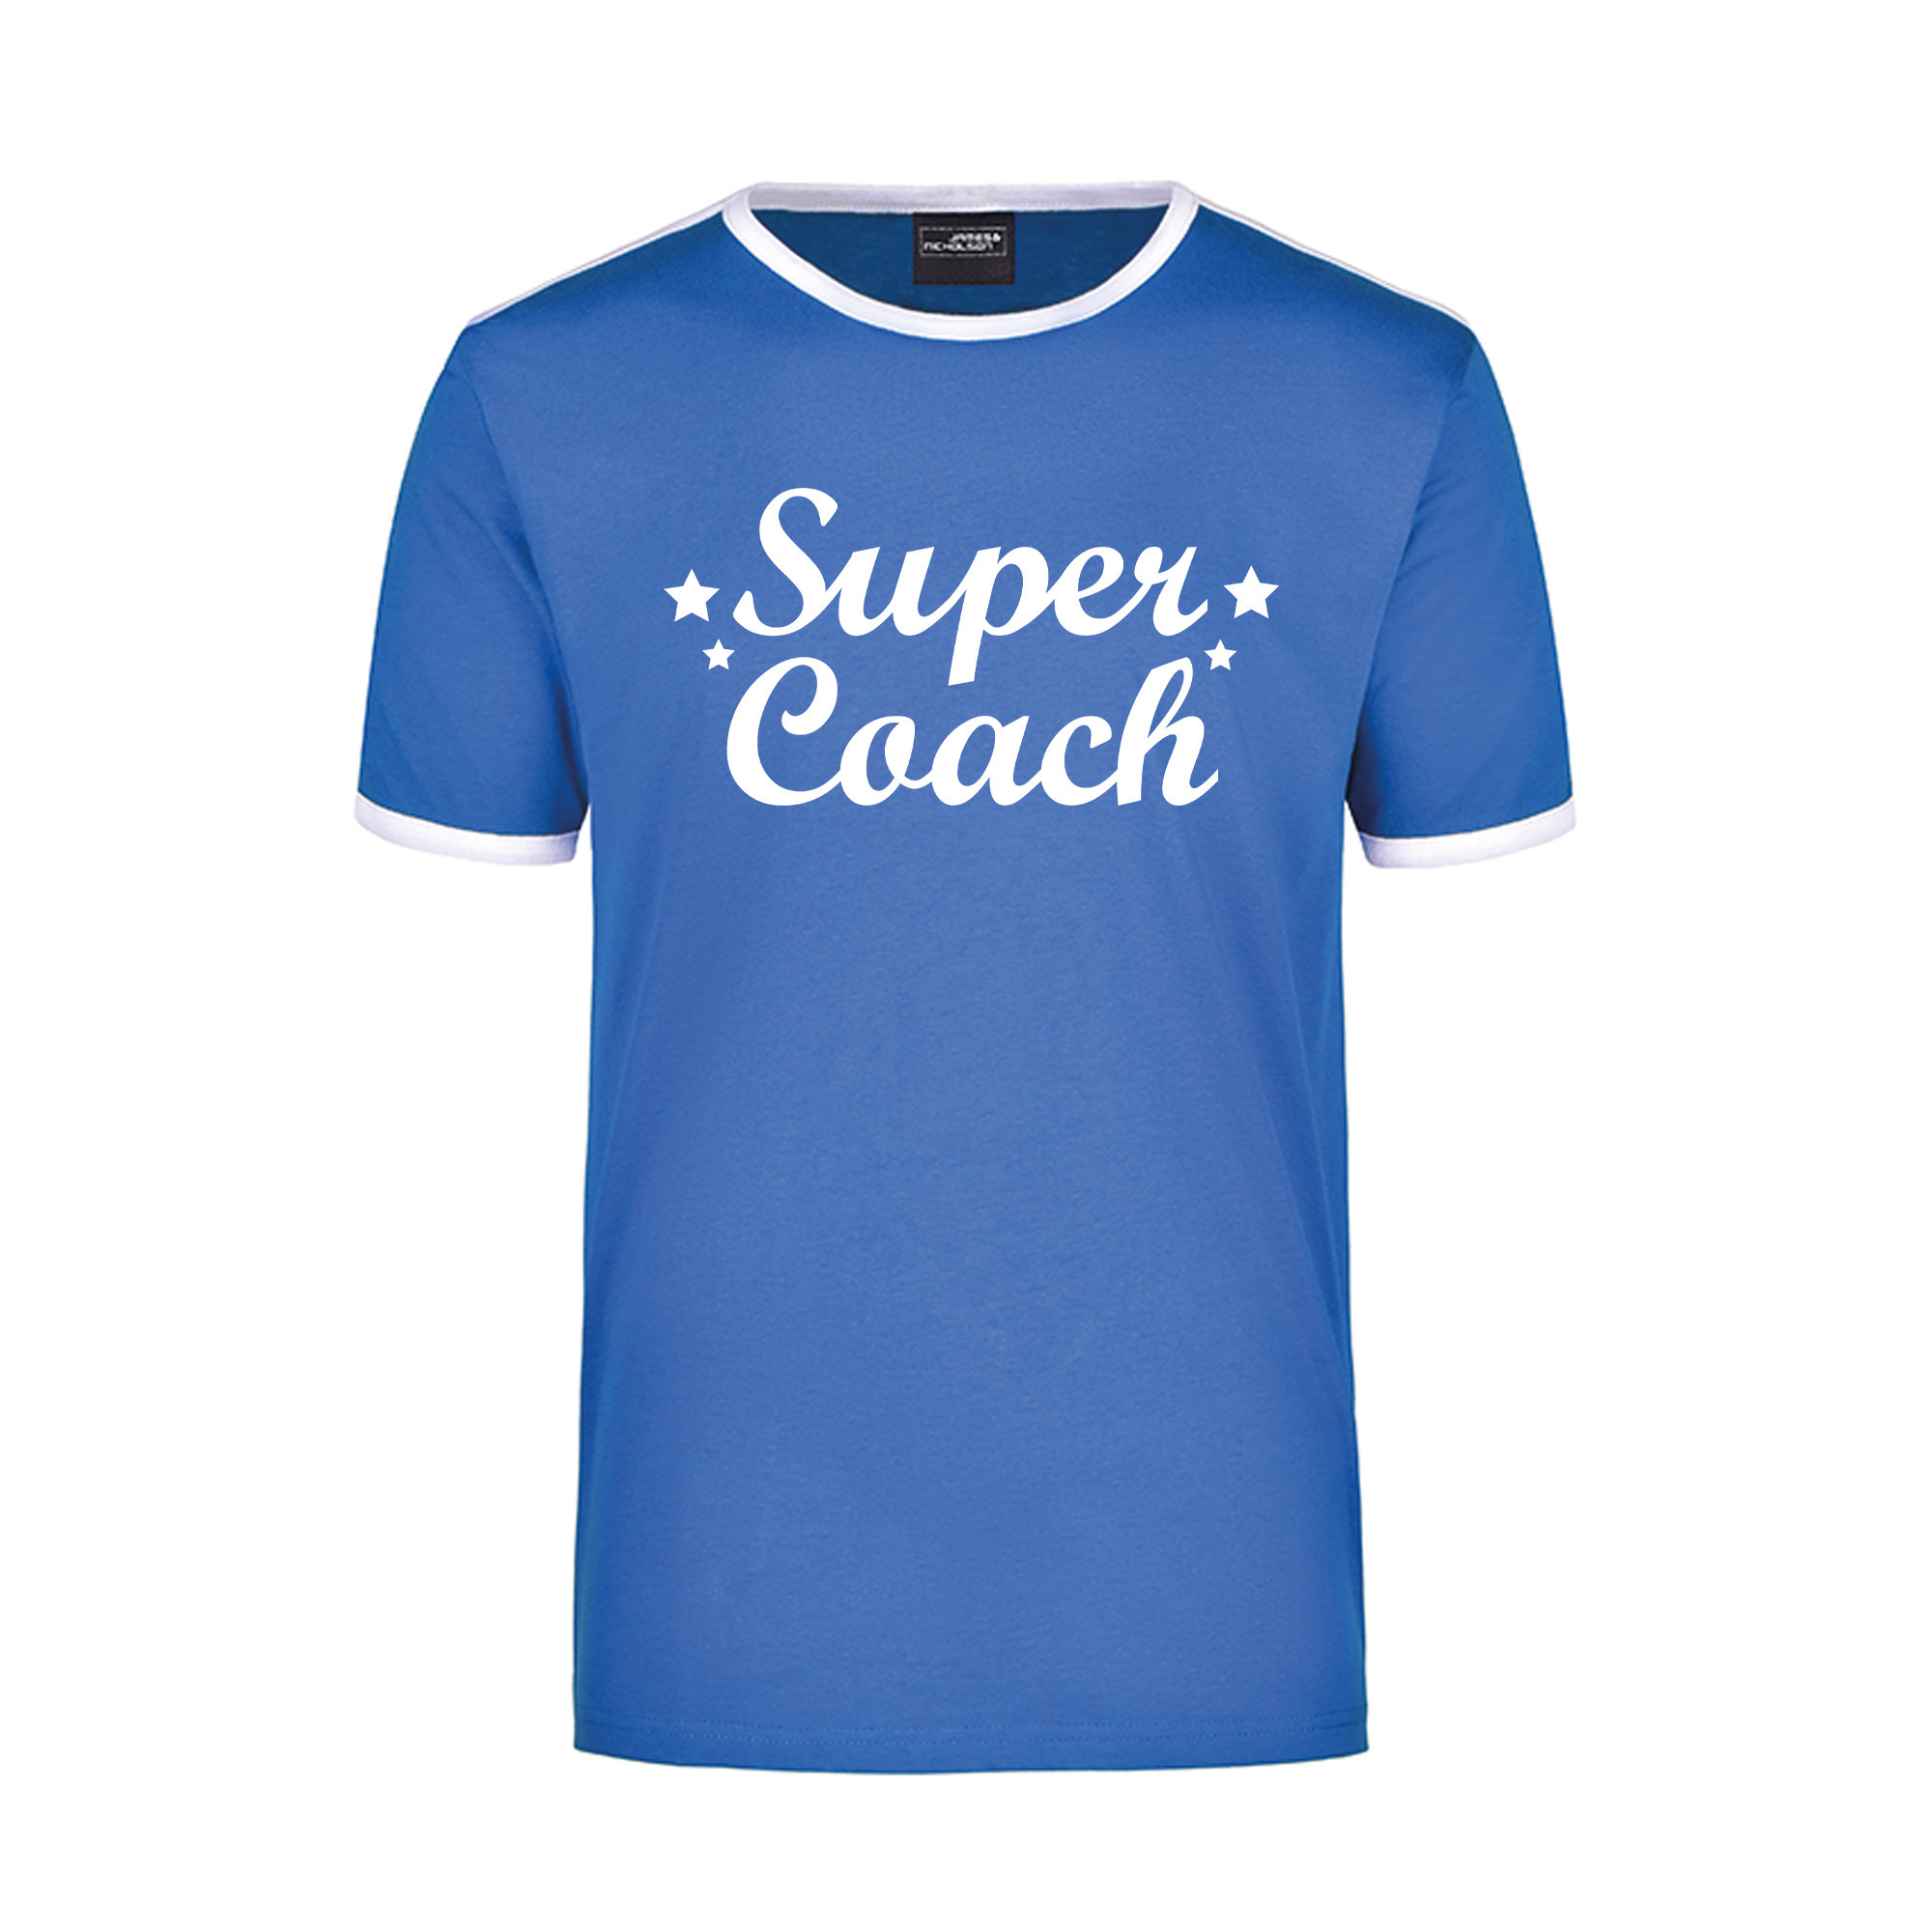 Super coach blauw/wit ringer t-shirt voor heren